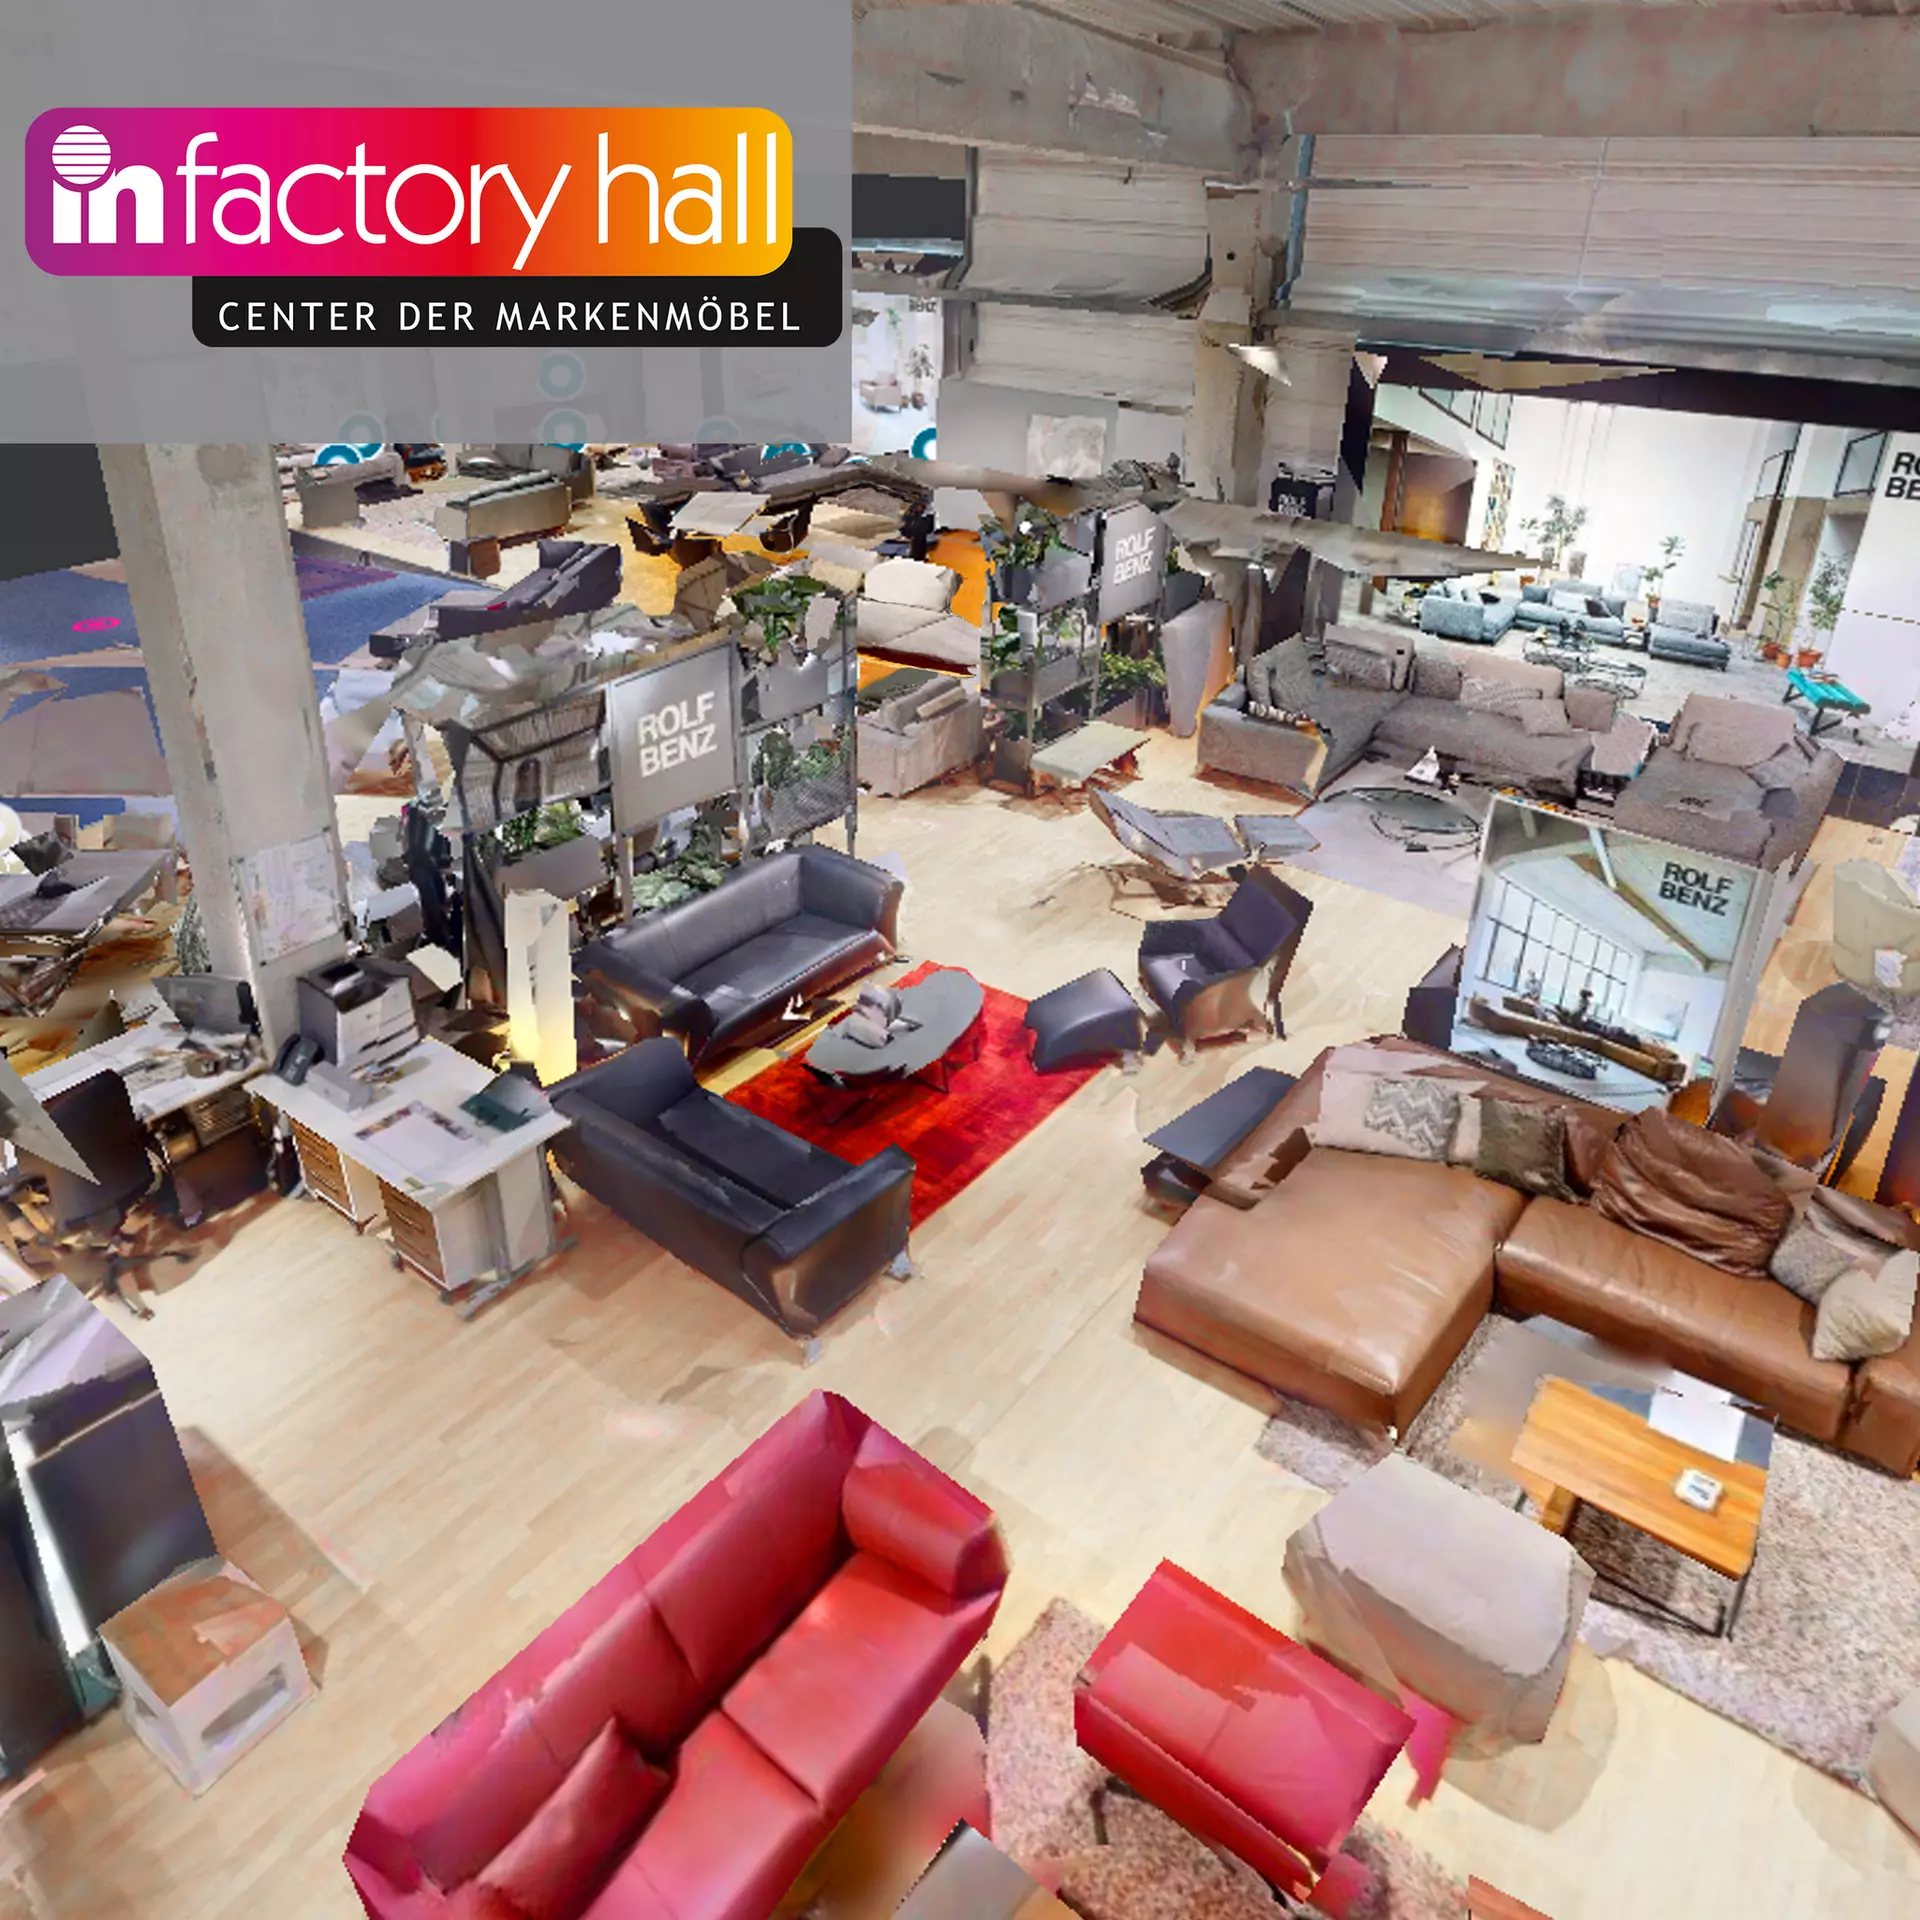 Starten Sie den virtuellen Rundgang durch die Factoryhall im Einrichtungshaus Möbel Inhofer